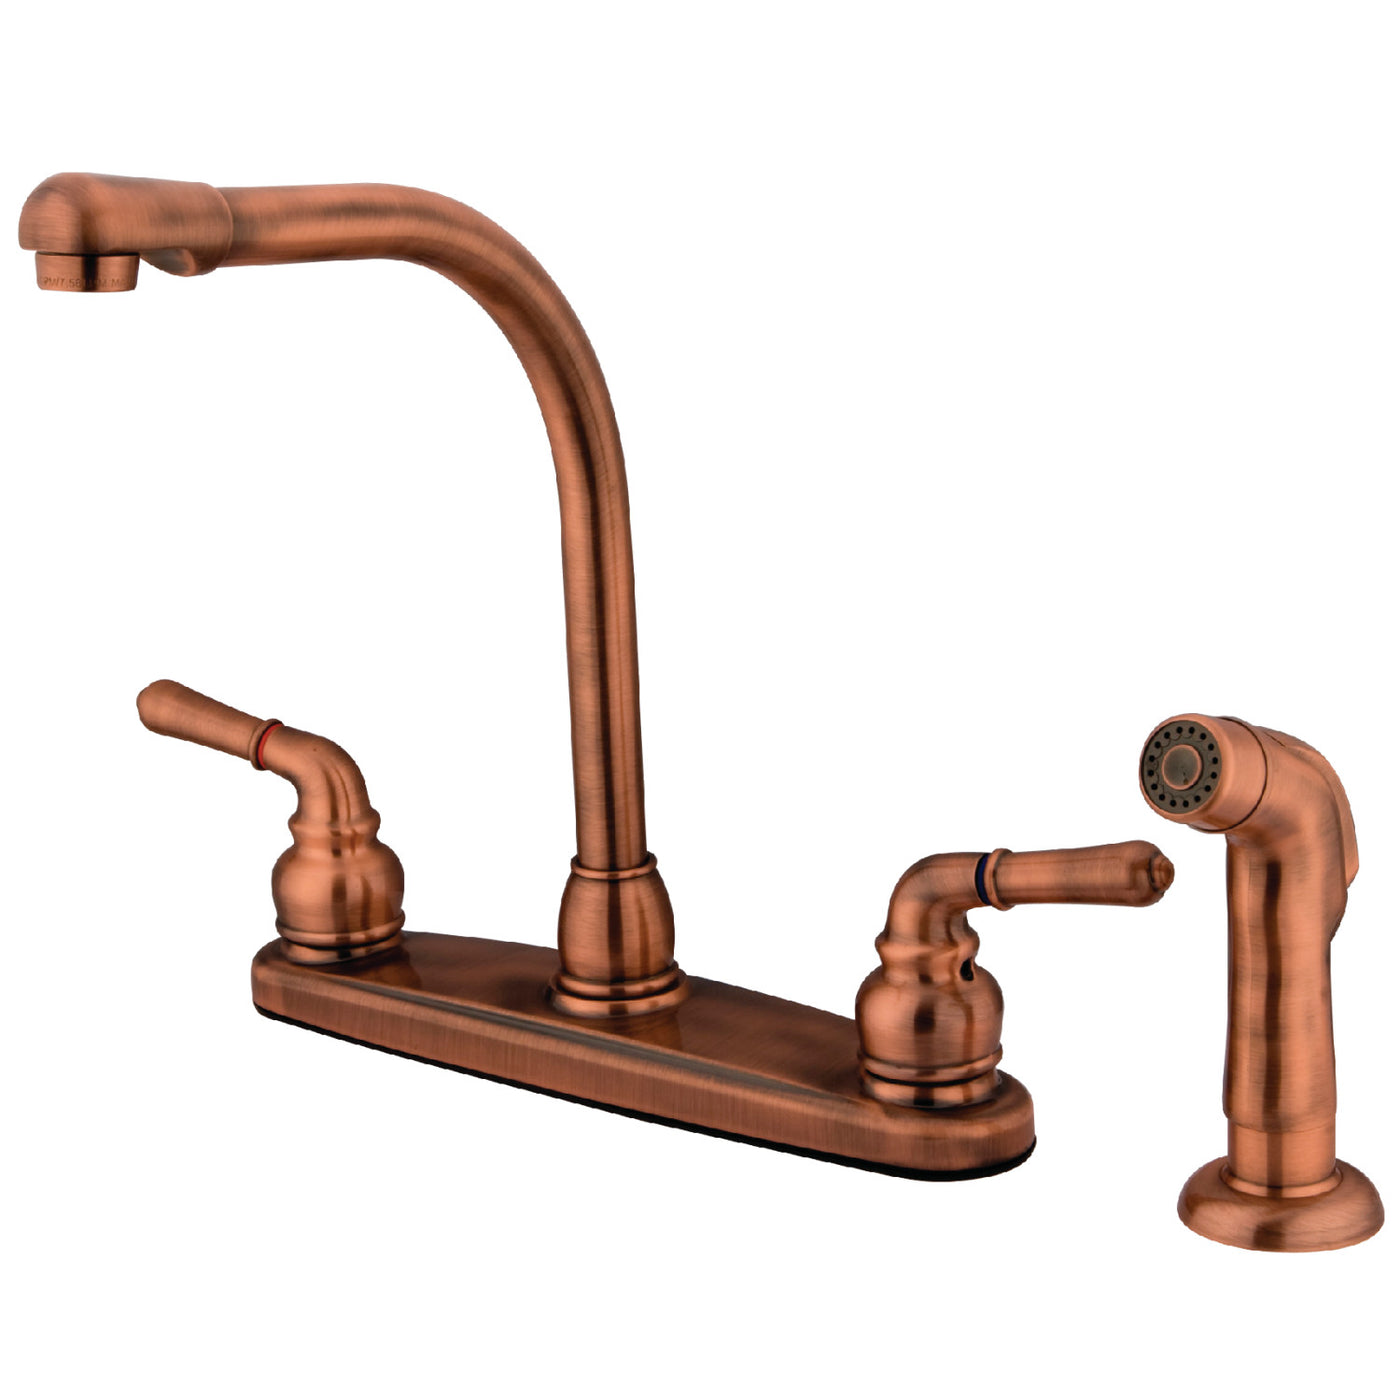 Elements of Design EB756SP Centerset Kitchen Faucet, Antique Copper